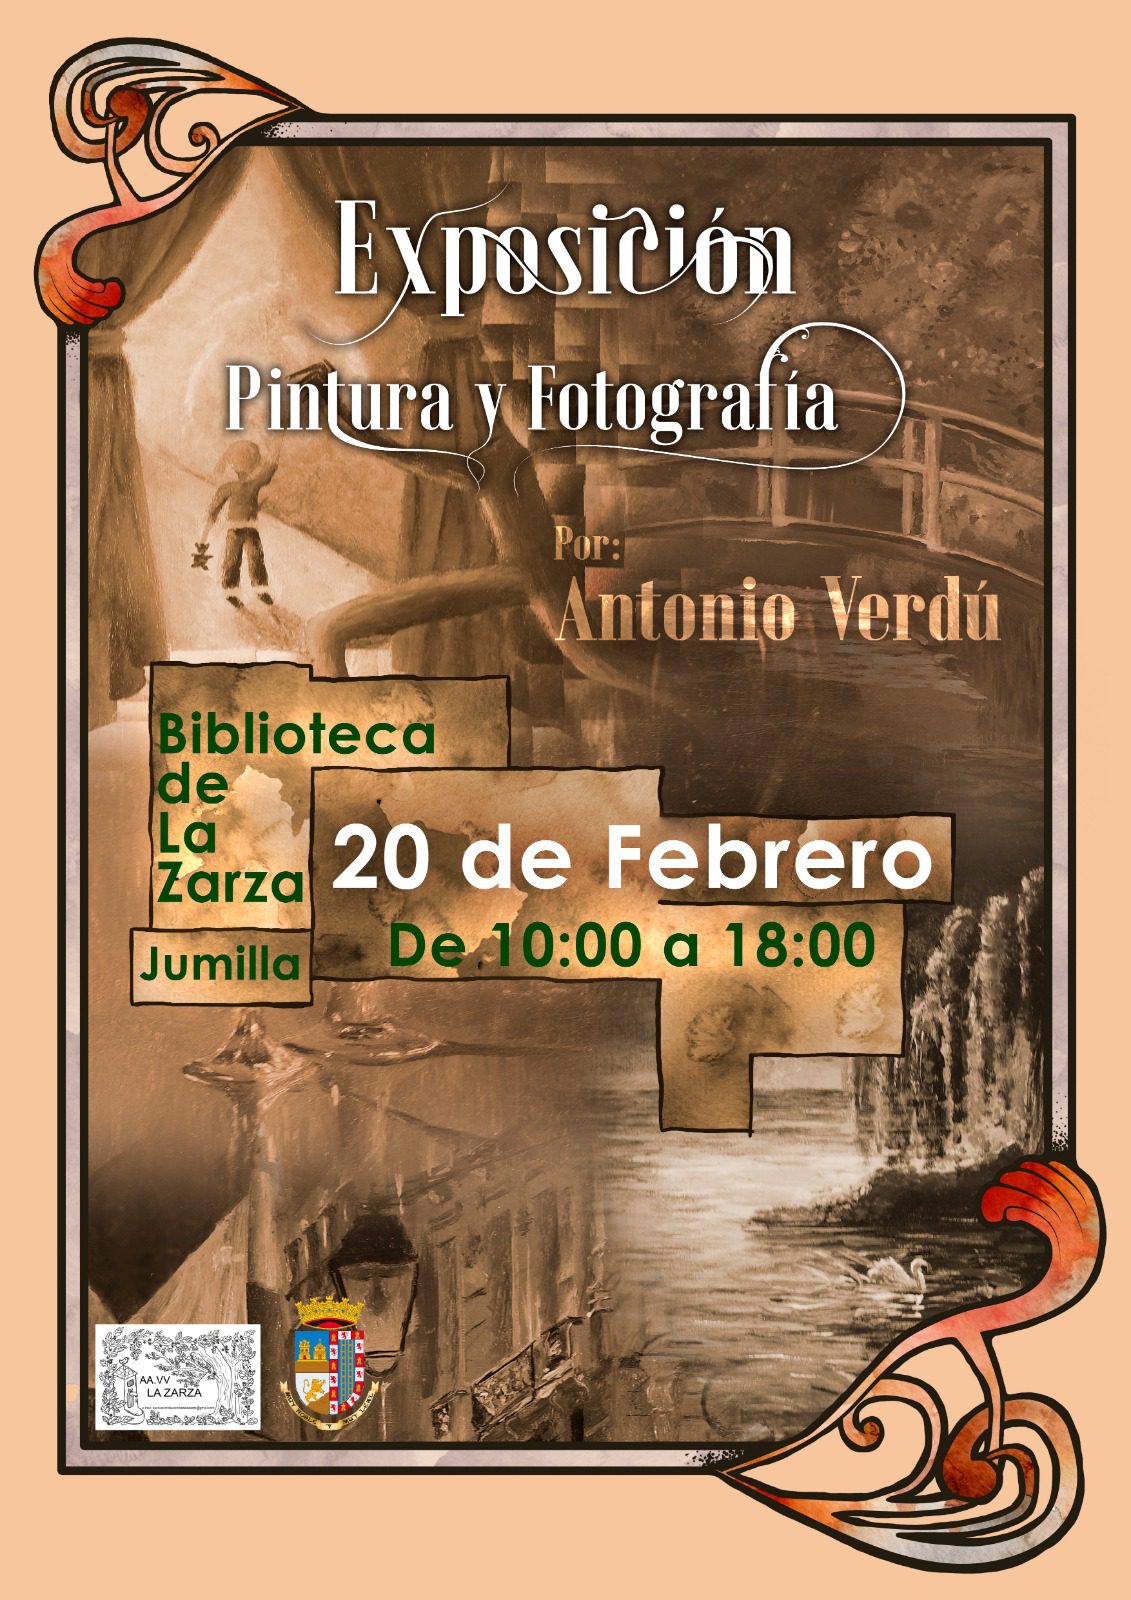 La Biblioteca de La Zarza acoge este domingo una exposición de pintura y fotografía